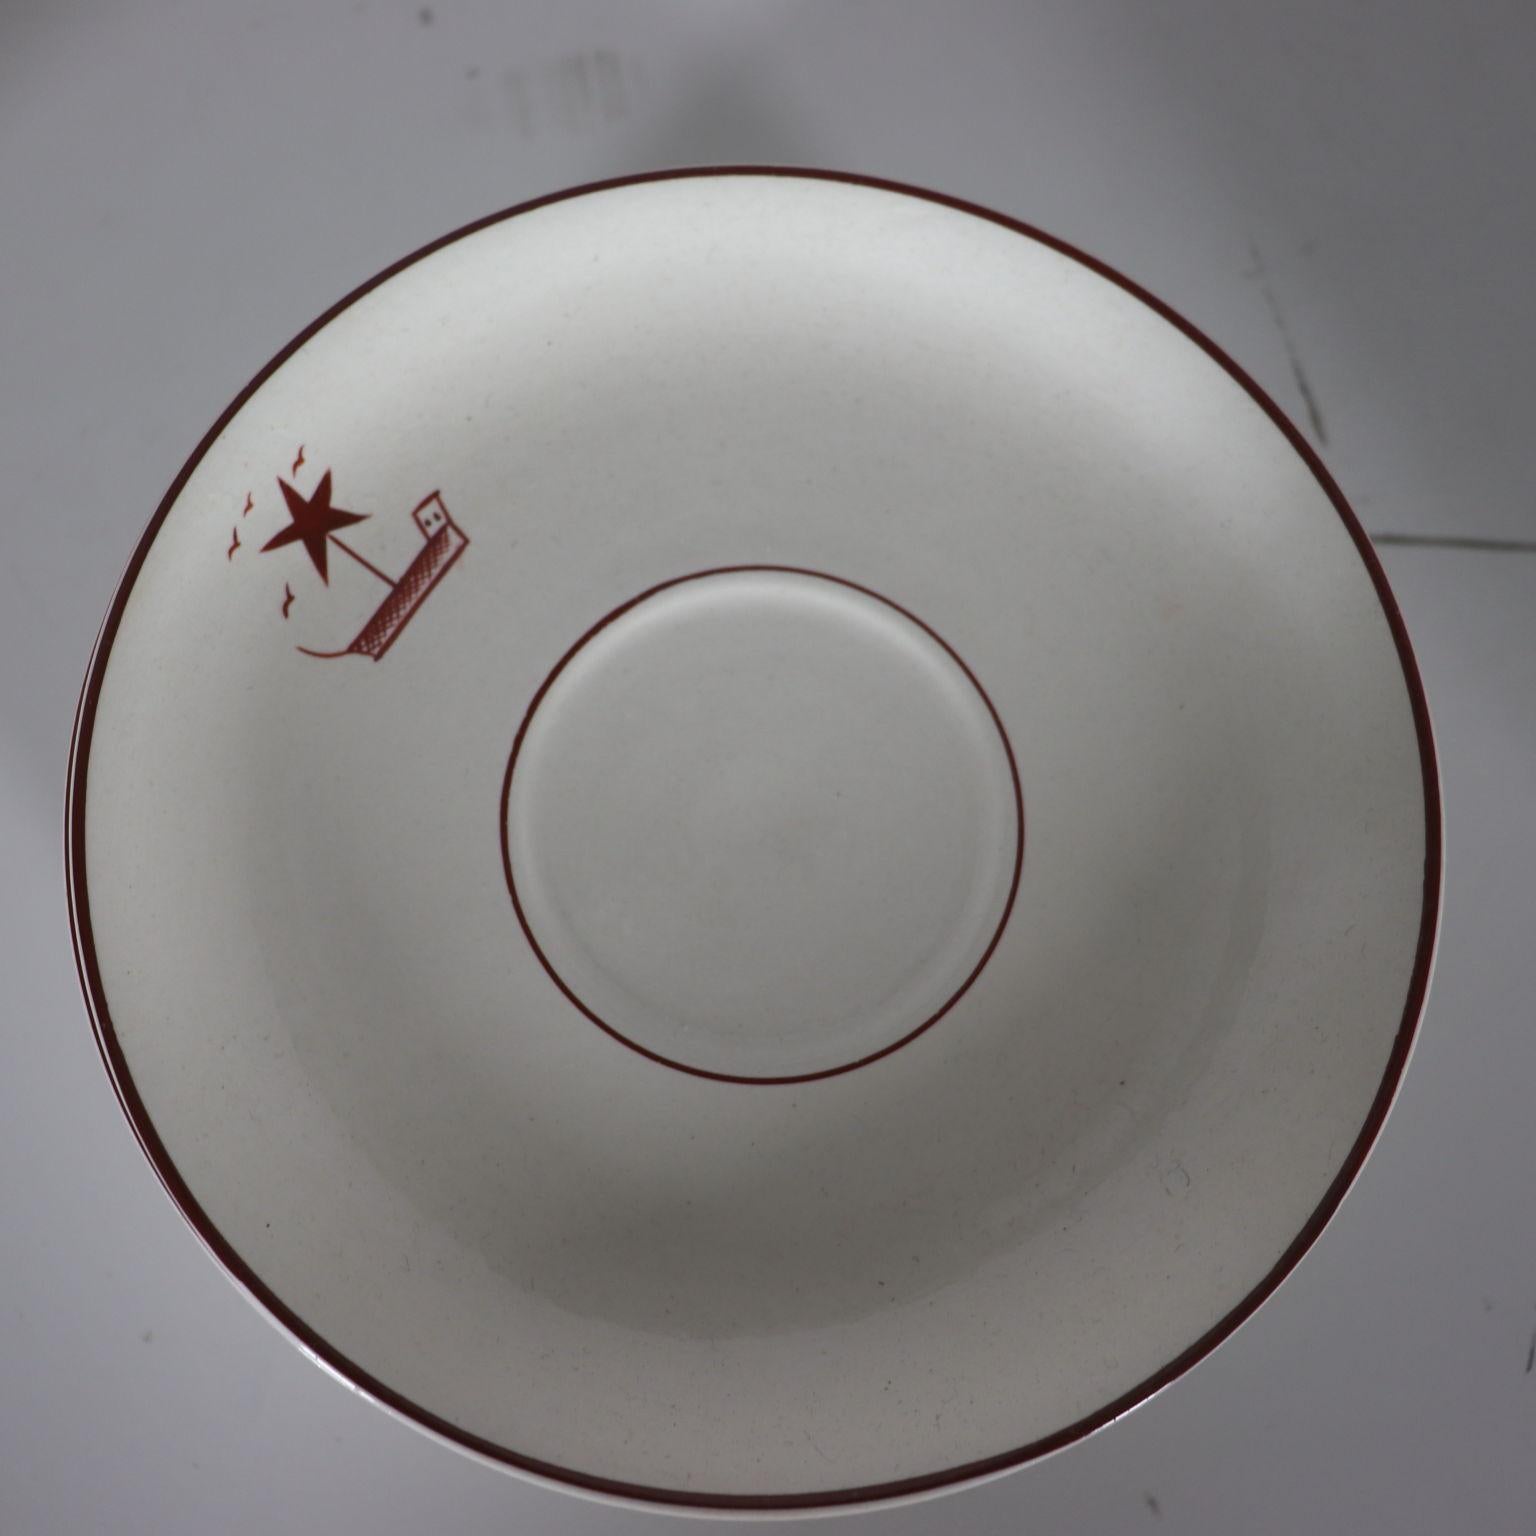 Service à thé en porcelaine blanche décorée. Les peintures sont attribuées à Giò Ponti, directeur et designer de Richard Ginori à l'époque. Marque de fabrication sous la base. Service à thé composé d'une théière, d'un sucrier, d'un pot à lait, de 12